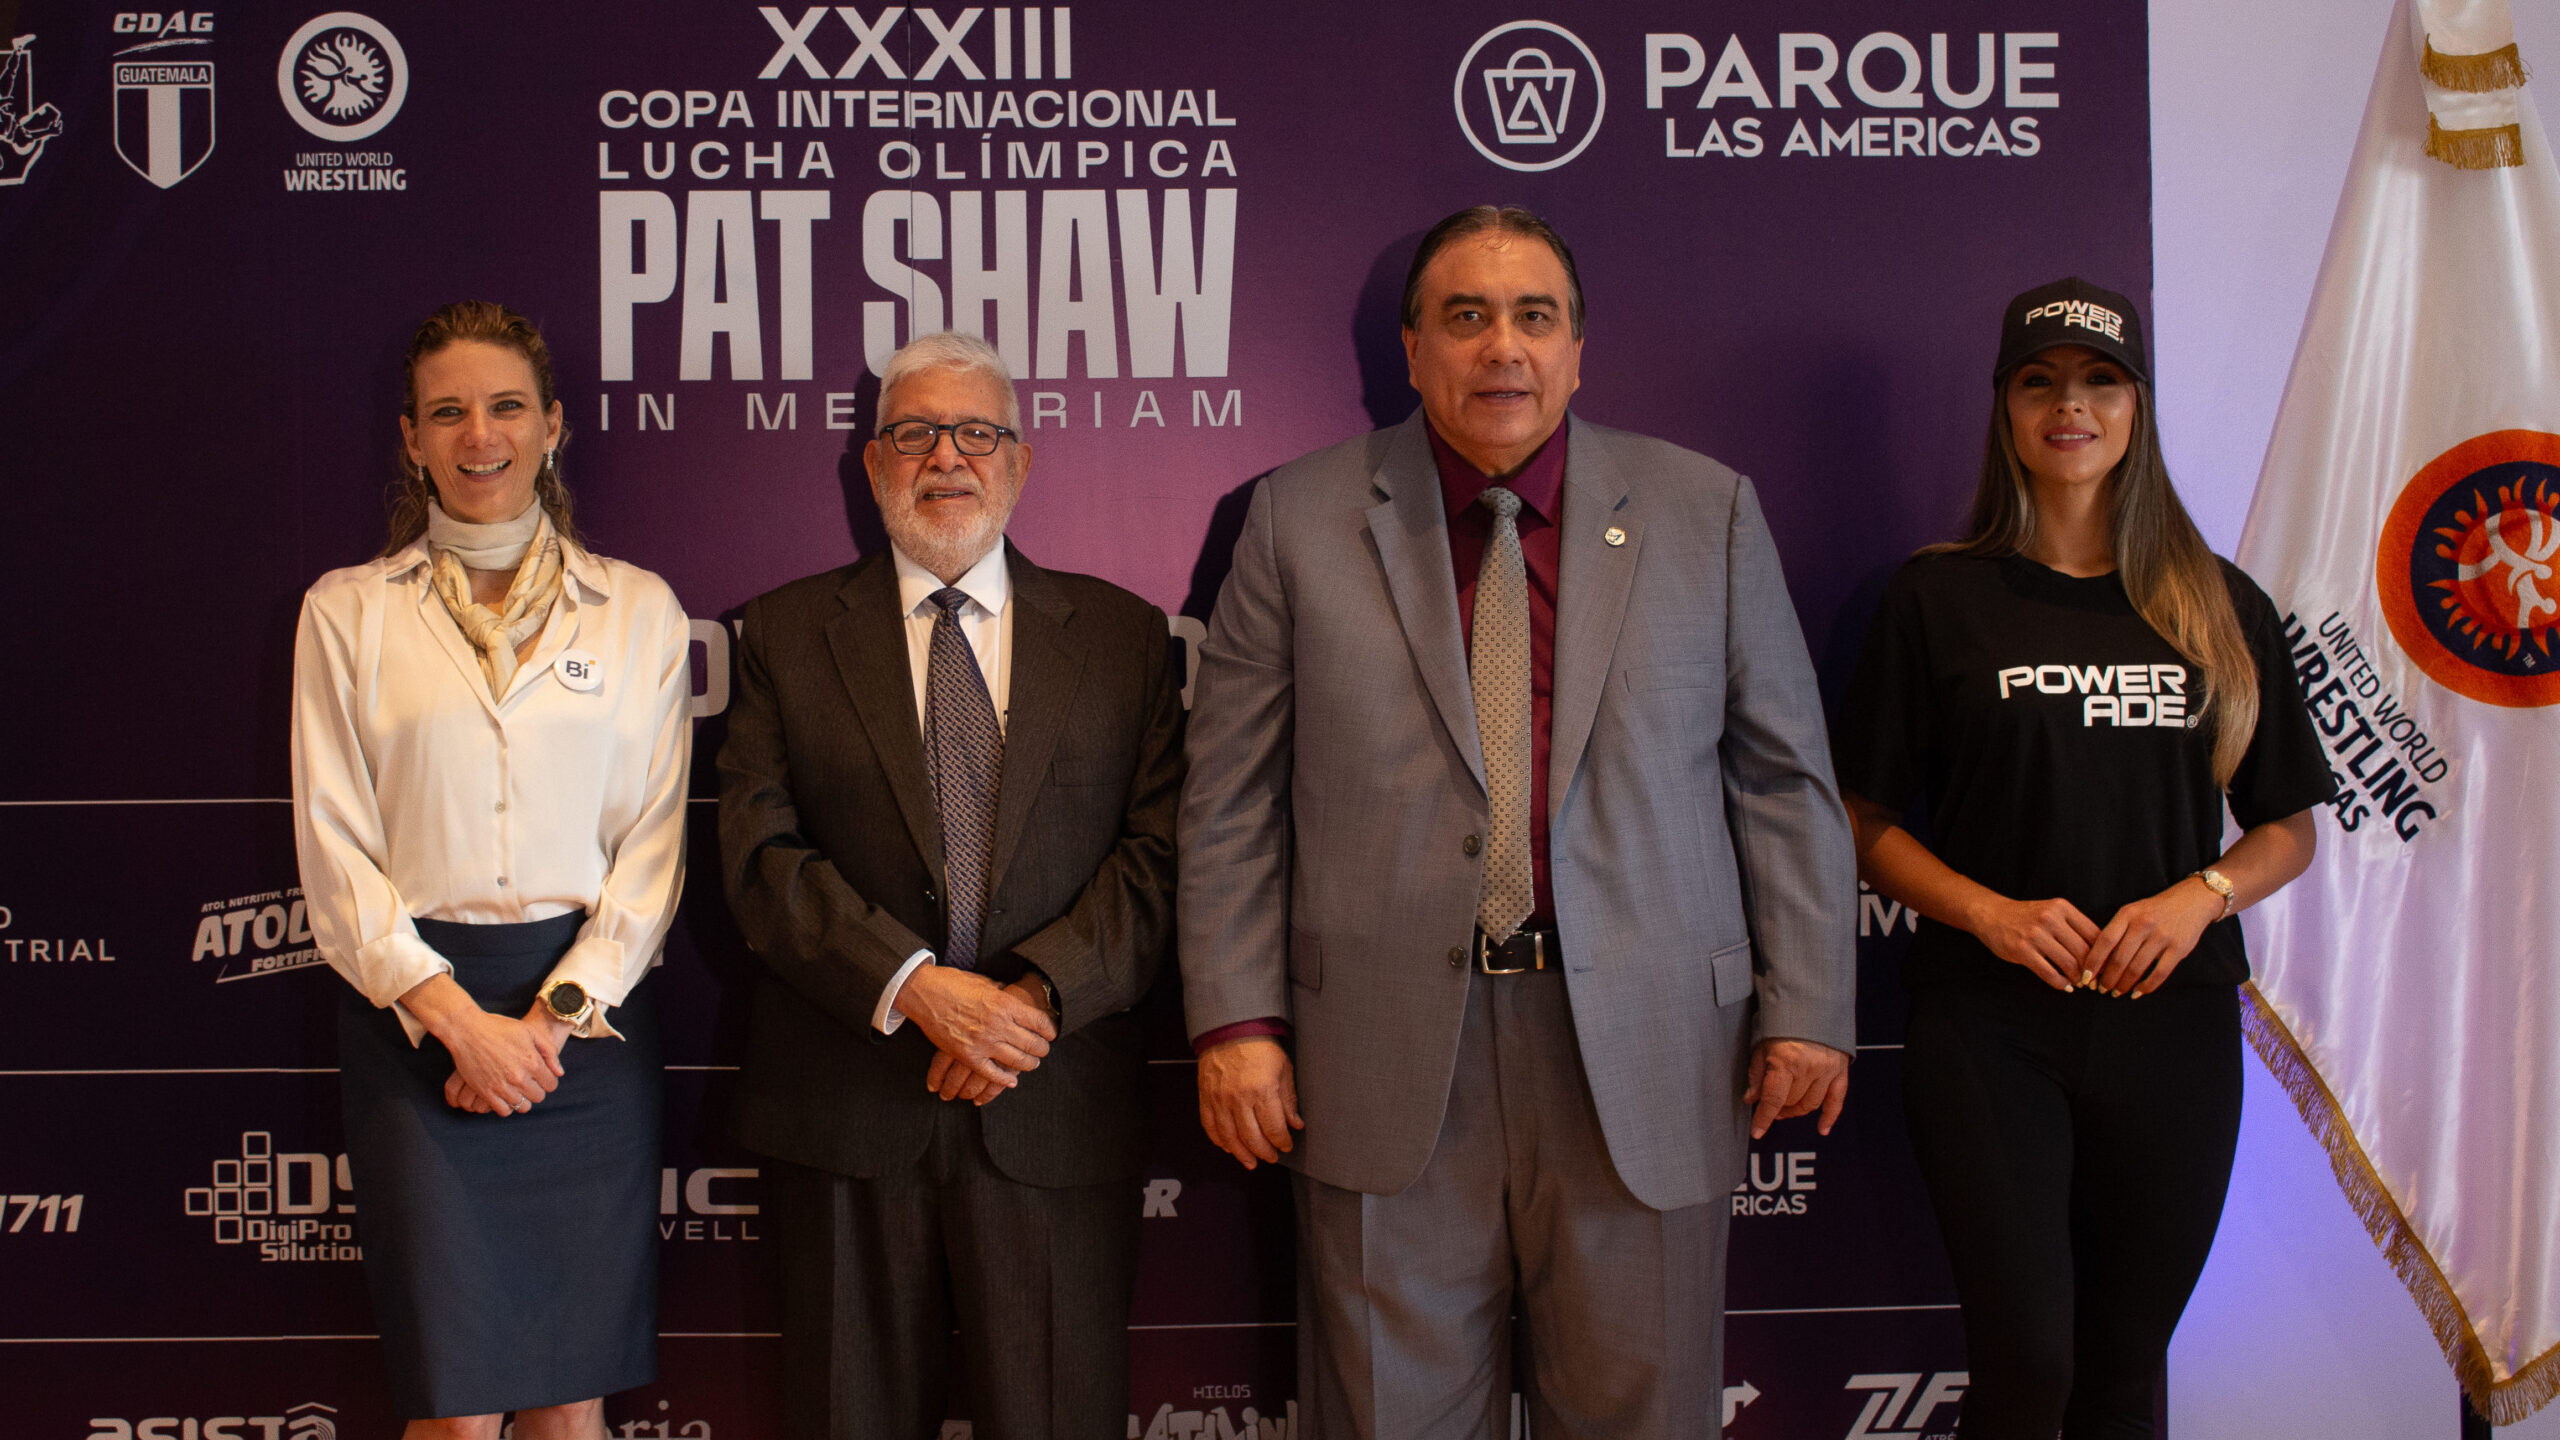 XXXIII Edición Copa Internacional de Lucha Olímpica “PAT SHAW” in Memoriam